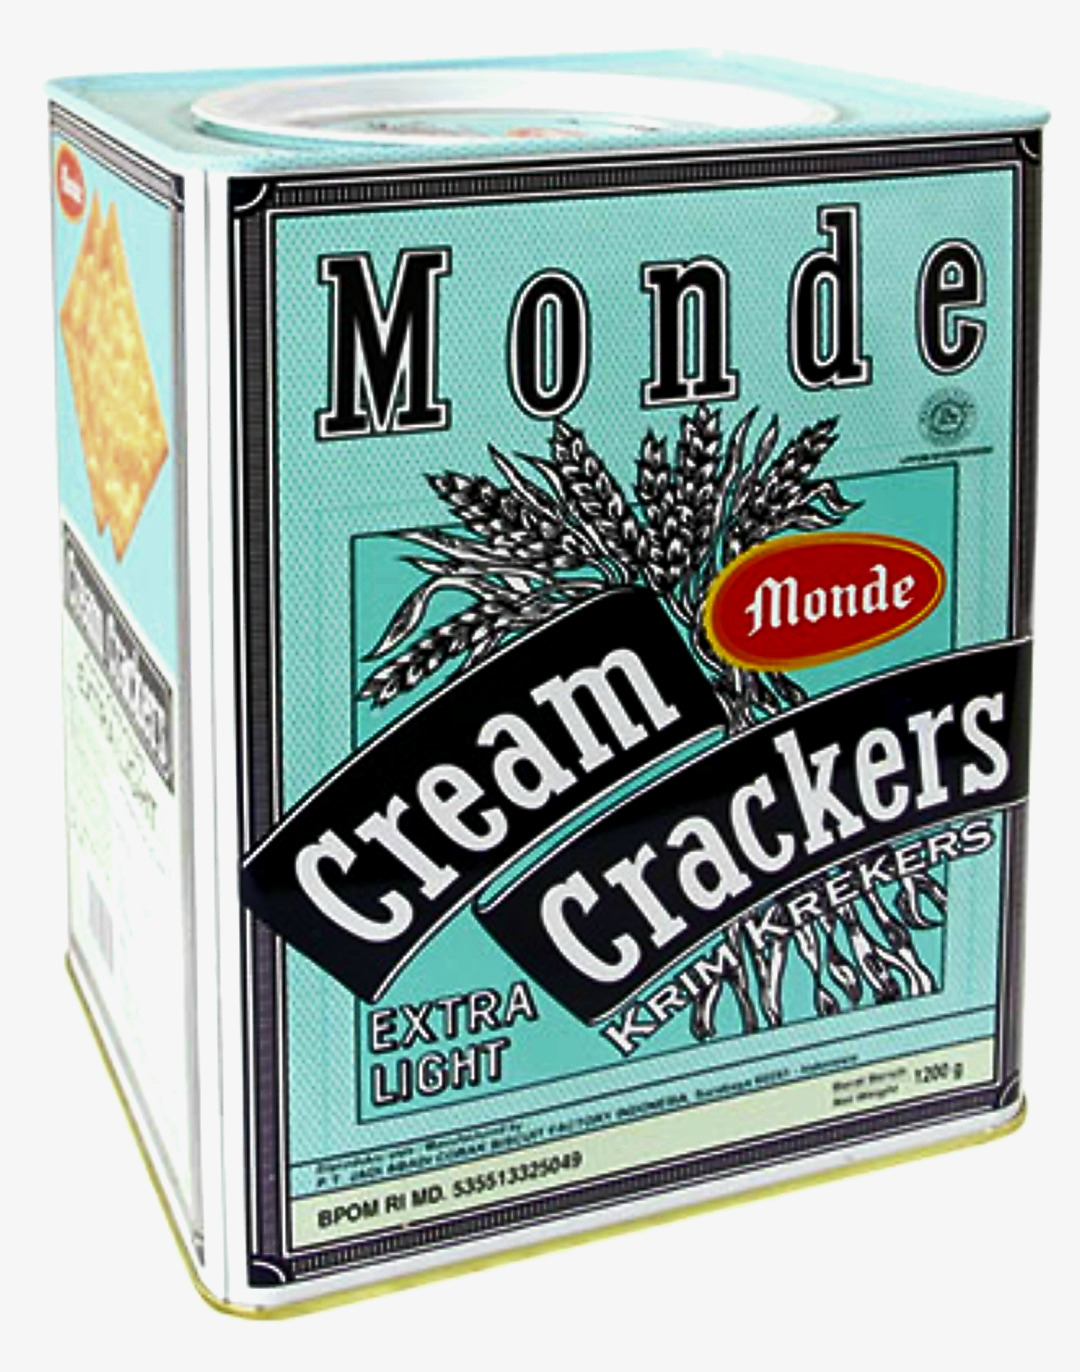 Krim krekers Monde Cream Crackers 